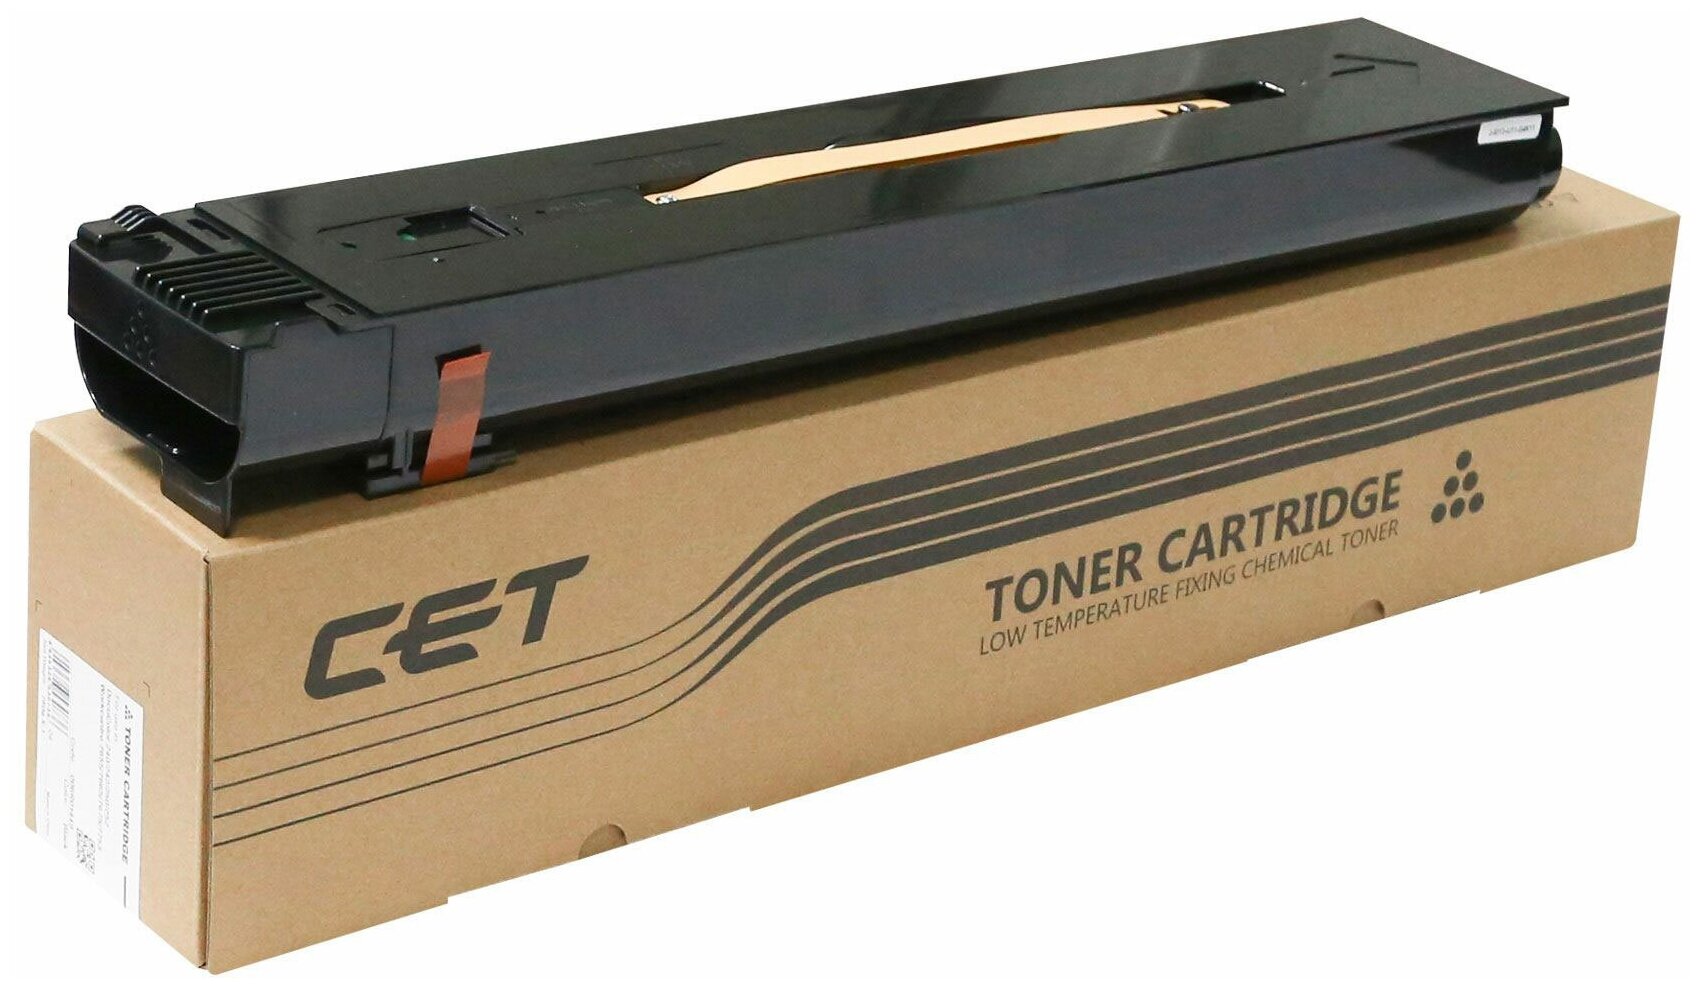 Тонер-картридж (CPT) 006R01449 для XEROX WorkCentre 7655/7765 (CET) Black, 780г, 30000 стр, CET8648K